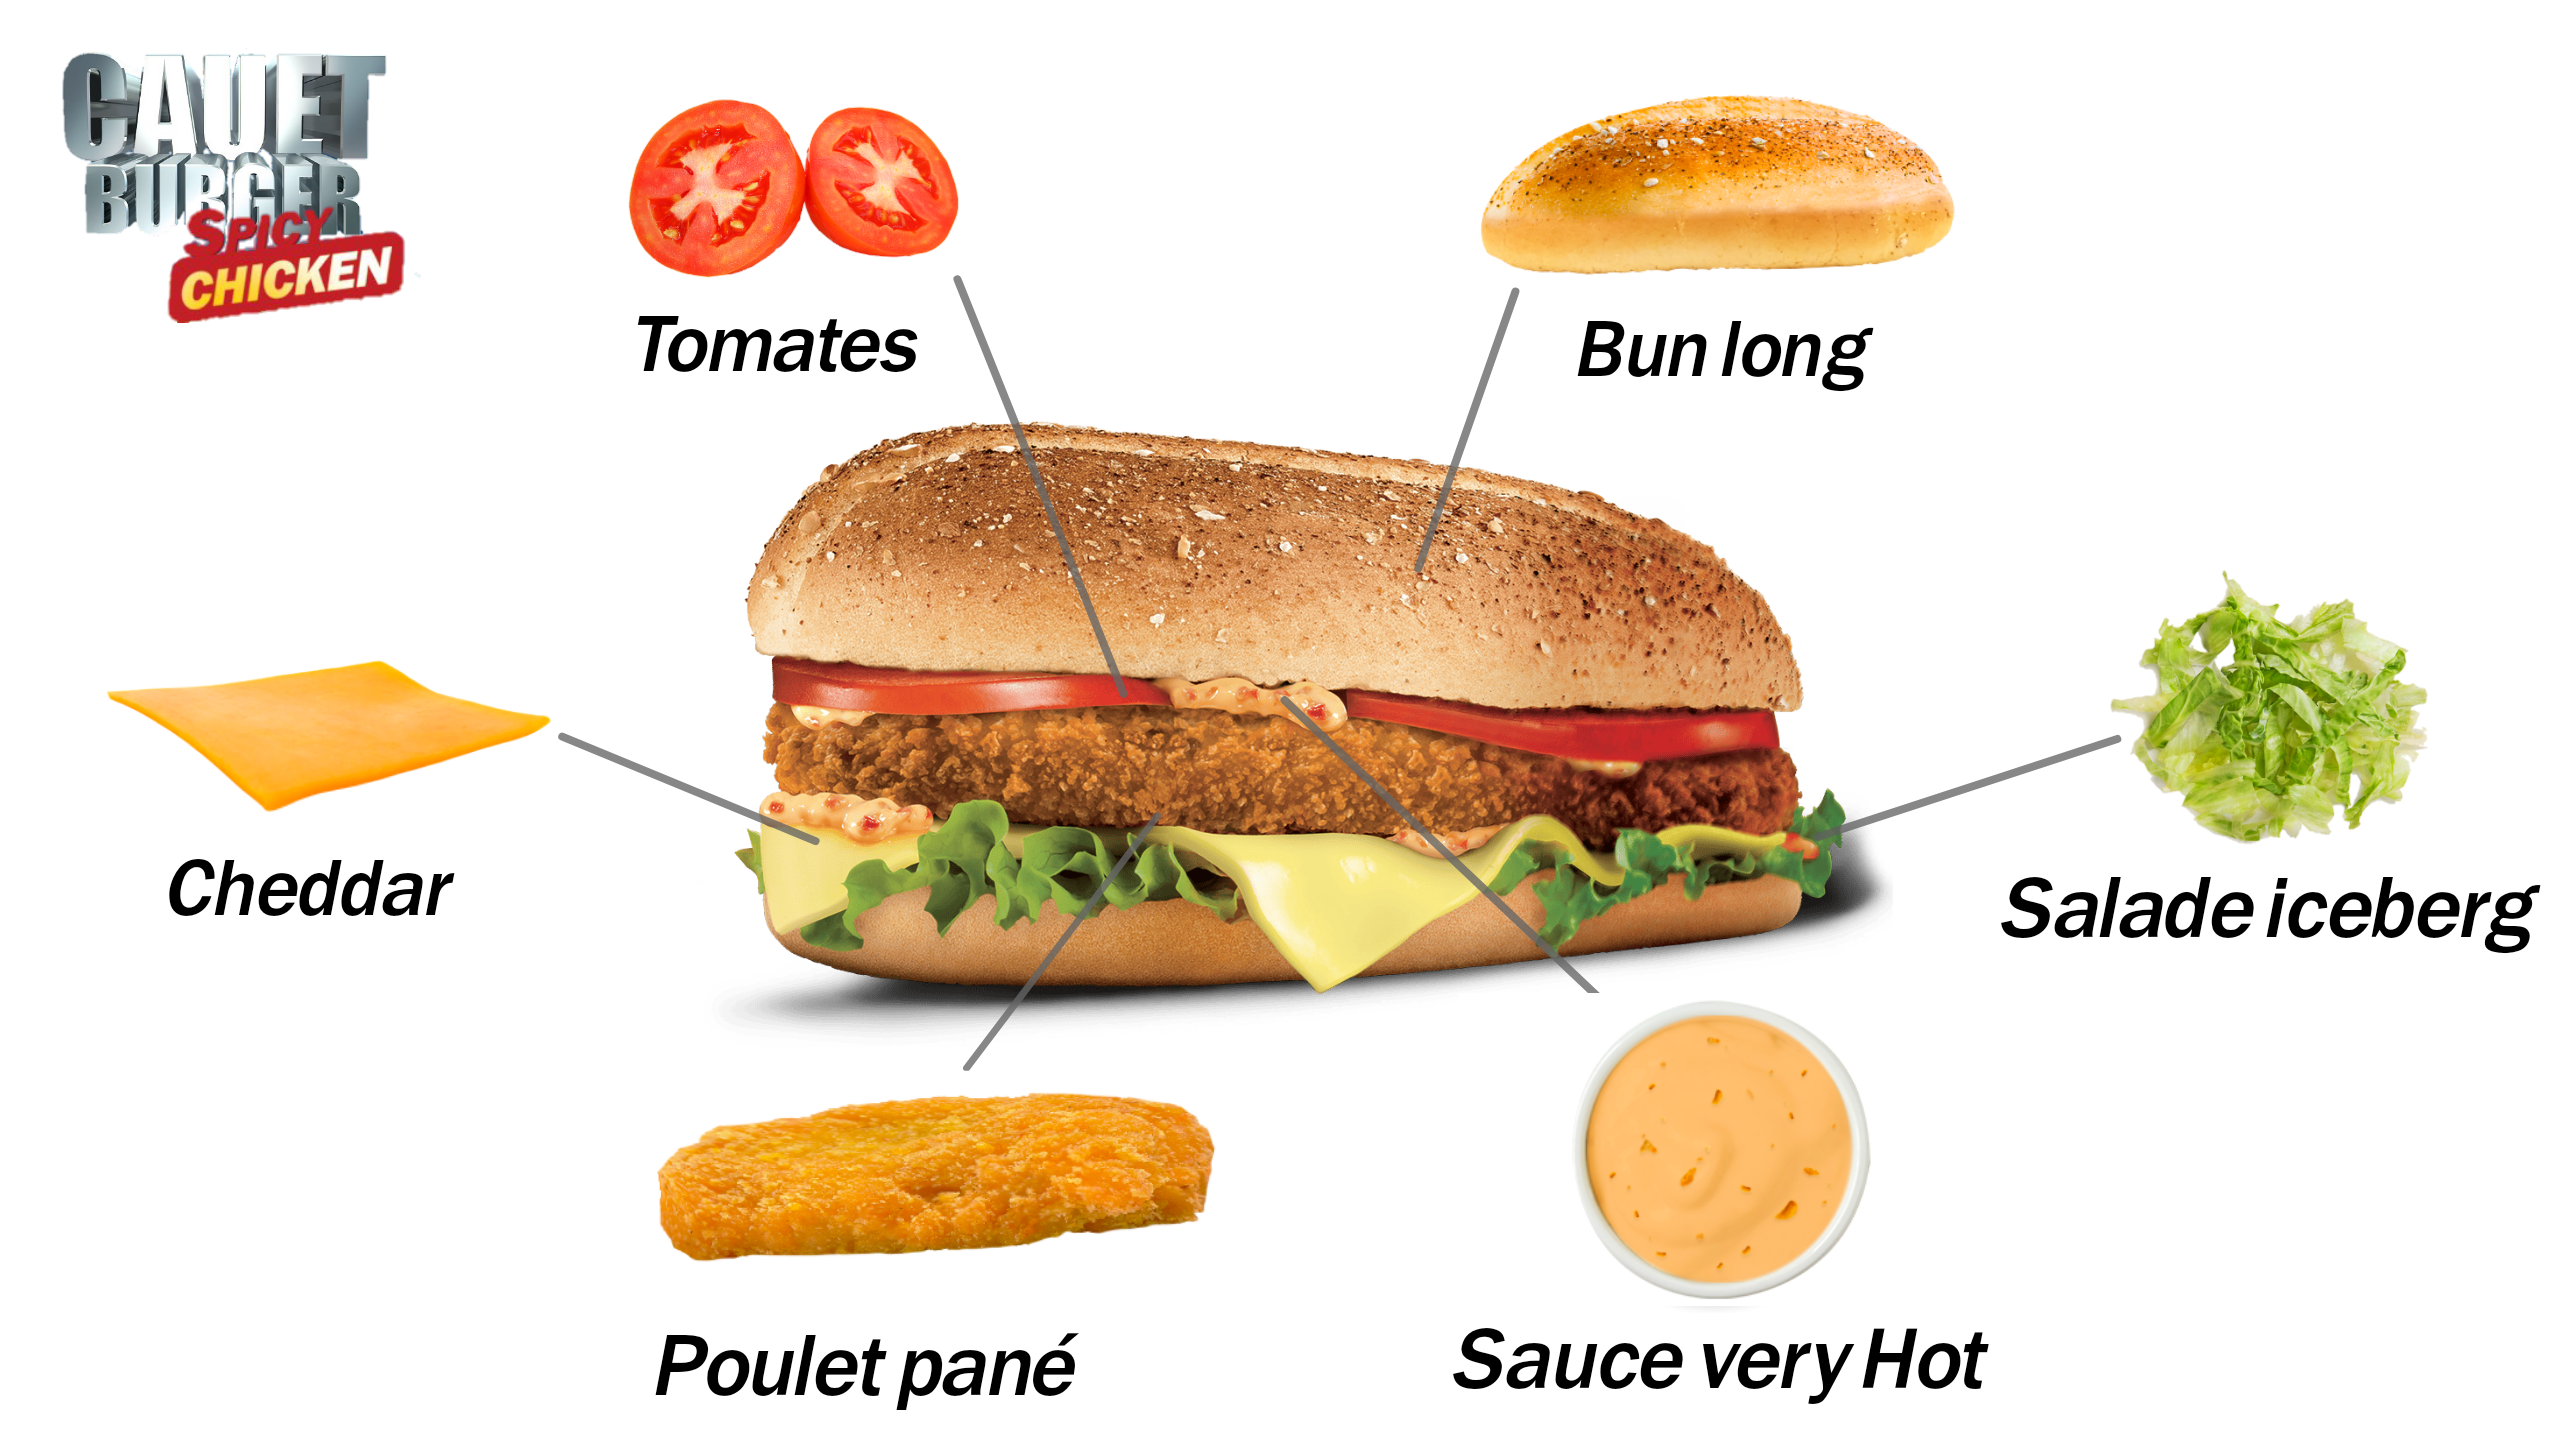 Les ingrédients du Cauet Burger Spicy Chicken